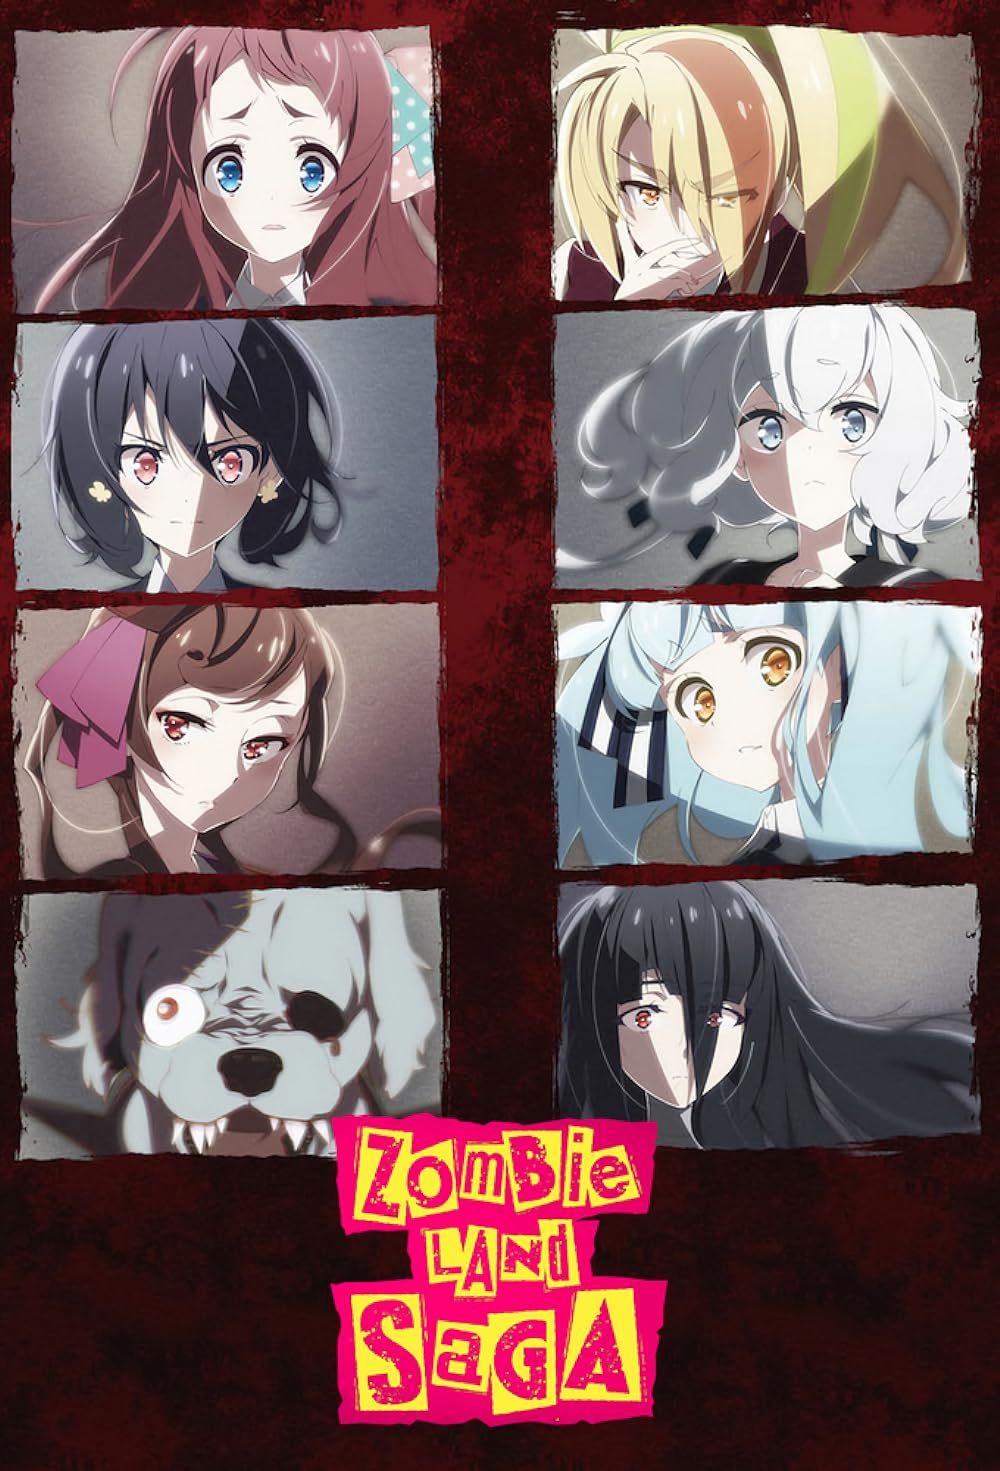 Imagens do elenco de Zombie Land Saga estão dispostas em fileiras no pôster